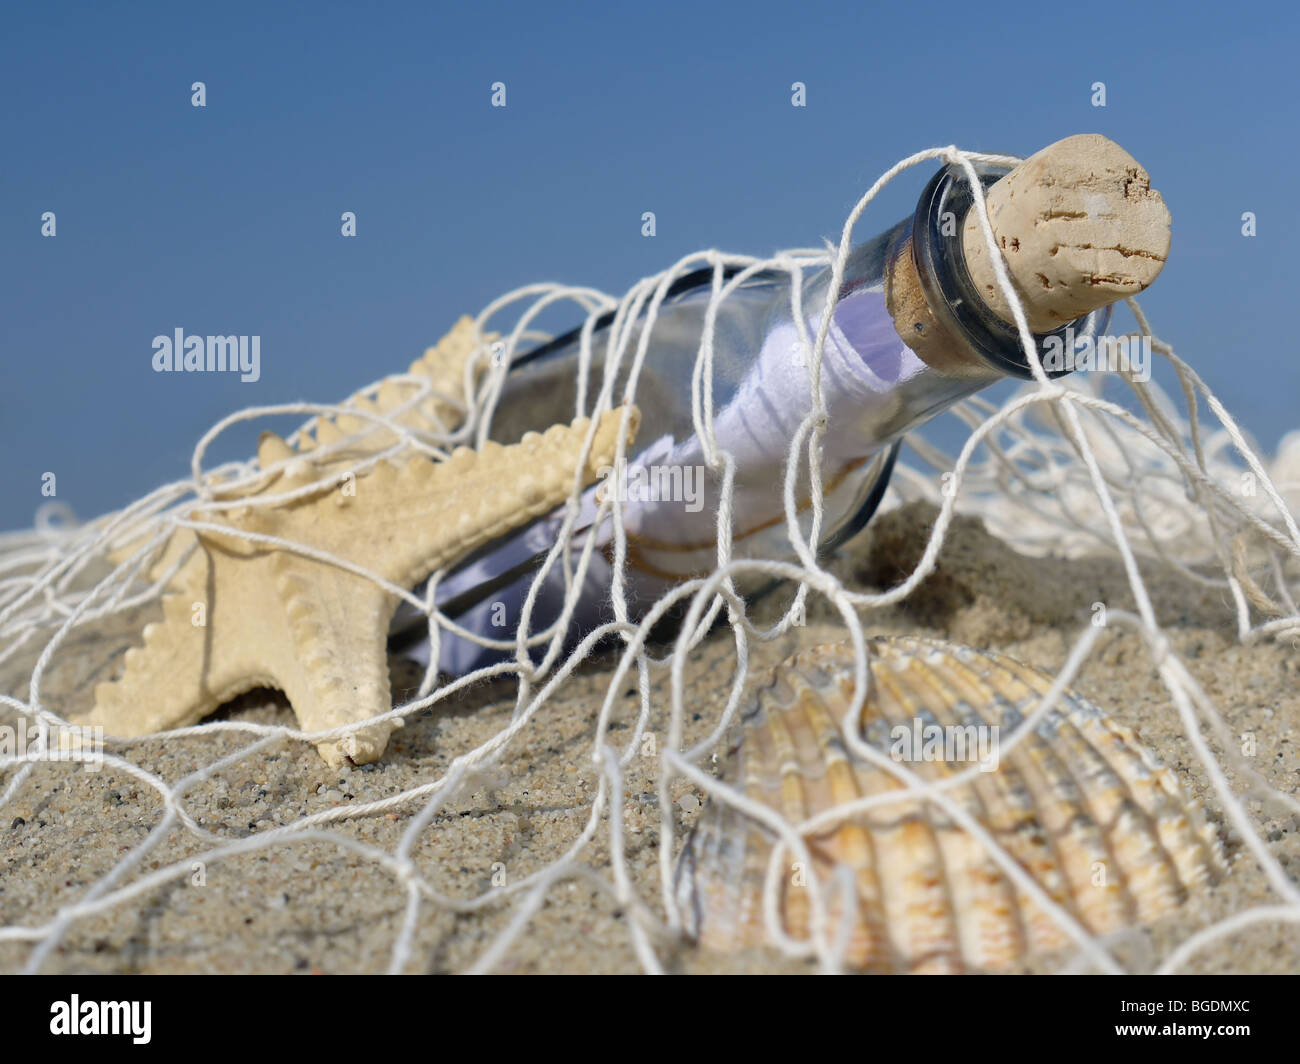 Les étoiles de mer, coquillage et une bouteille avec message pris dans le filet de pêche Banque D'Images